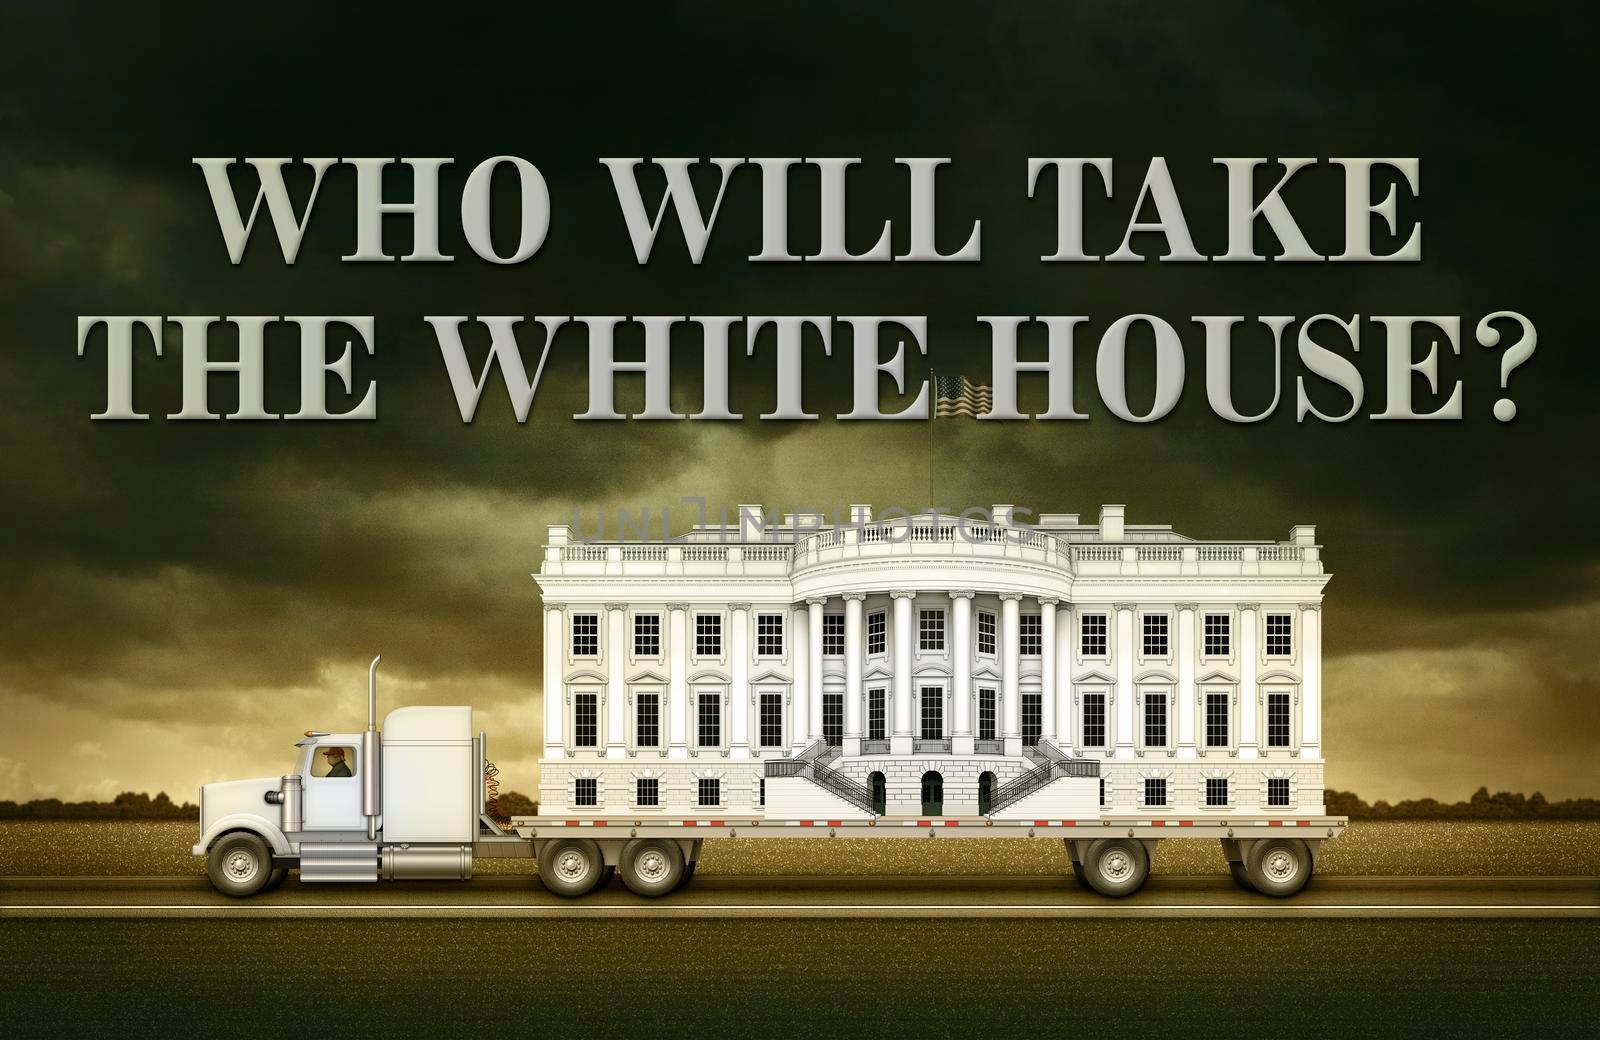 White House on a flat bed Truck by jimlarkin